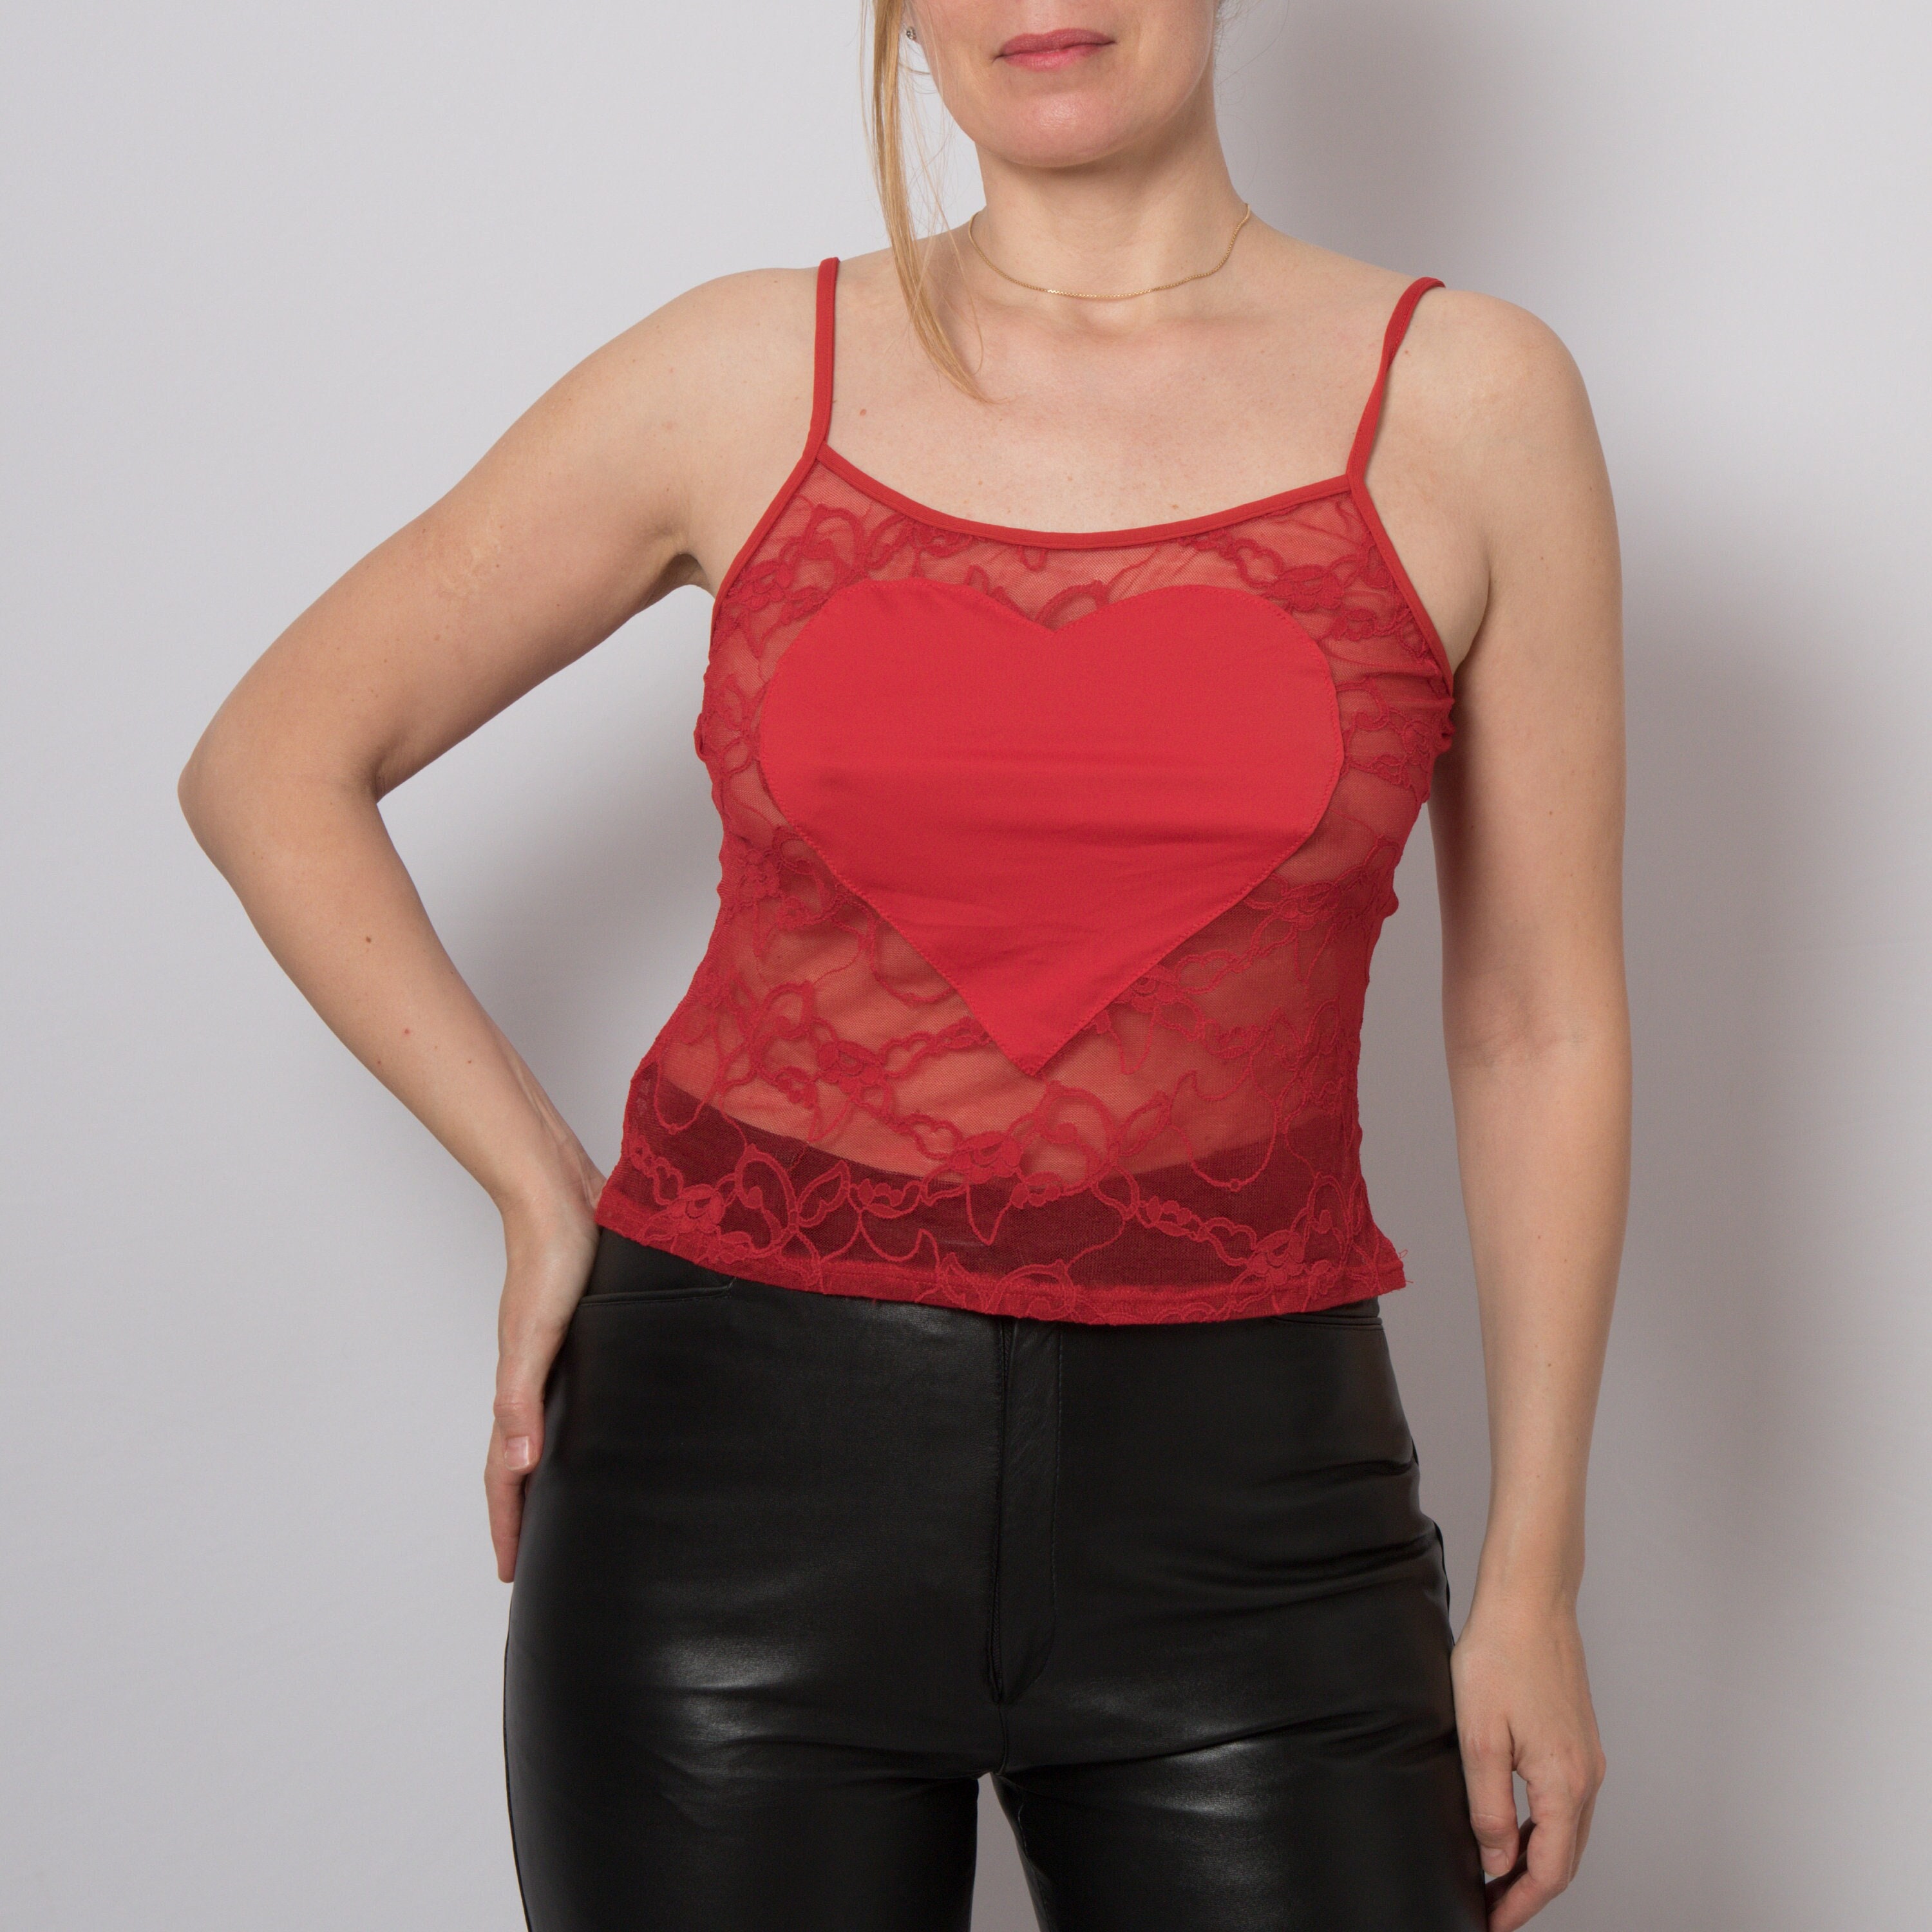 Intimissimi red heart black Camisole Top sleepwear nightwear size L it 5  eu85